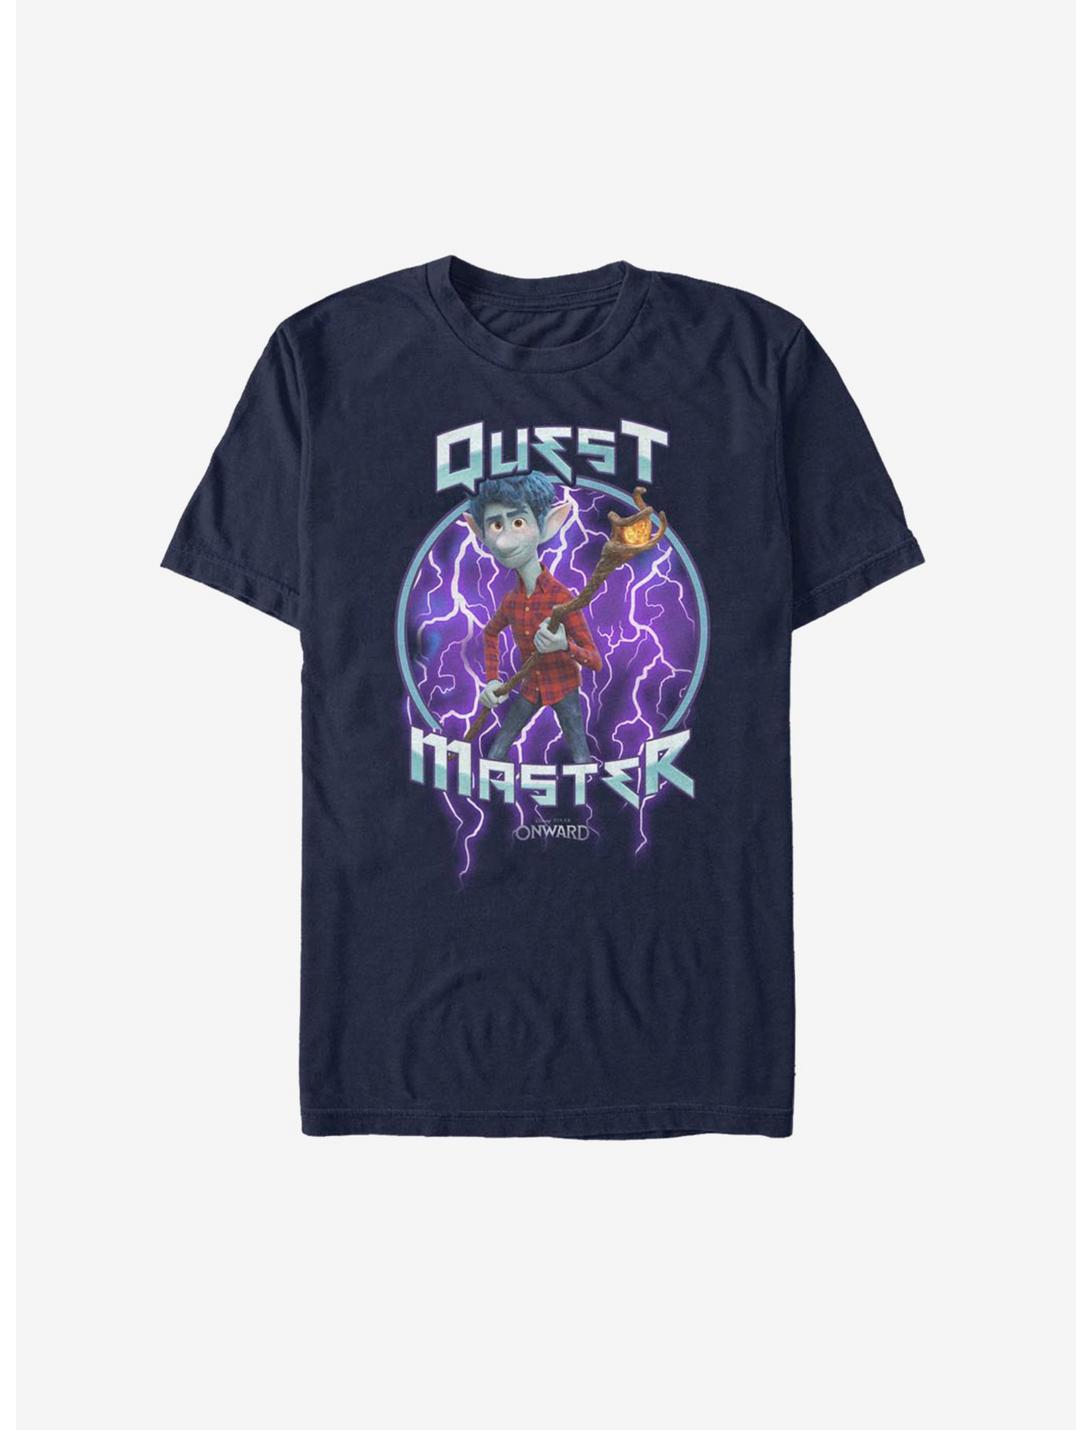 Disney Pixar Onward Quest Master T-Shirt, NAVY, hi-res